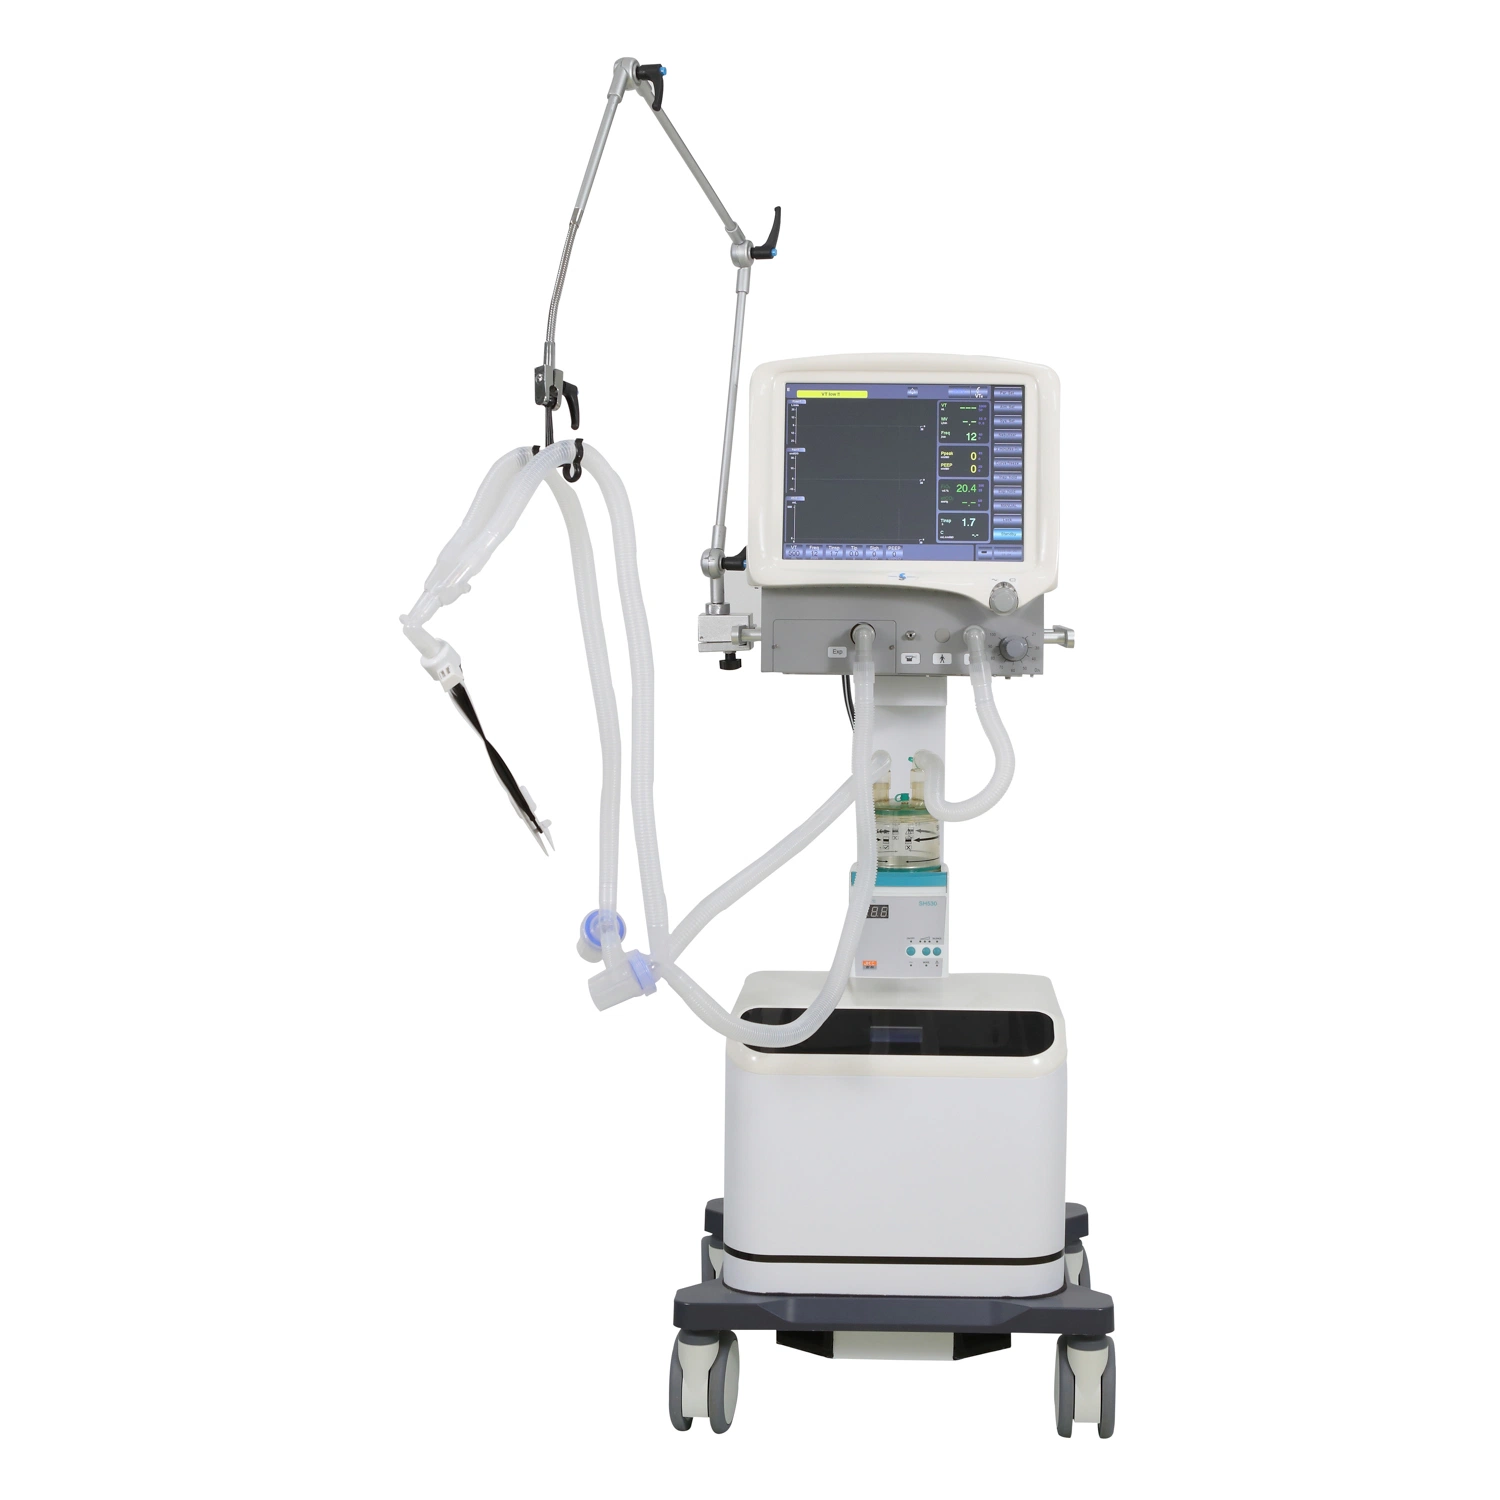 Equipamento de ventilação de ecrã tátil para aparelhos respiratórios hospitalares para ventilação profissional